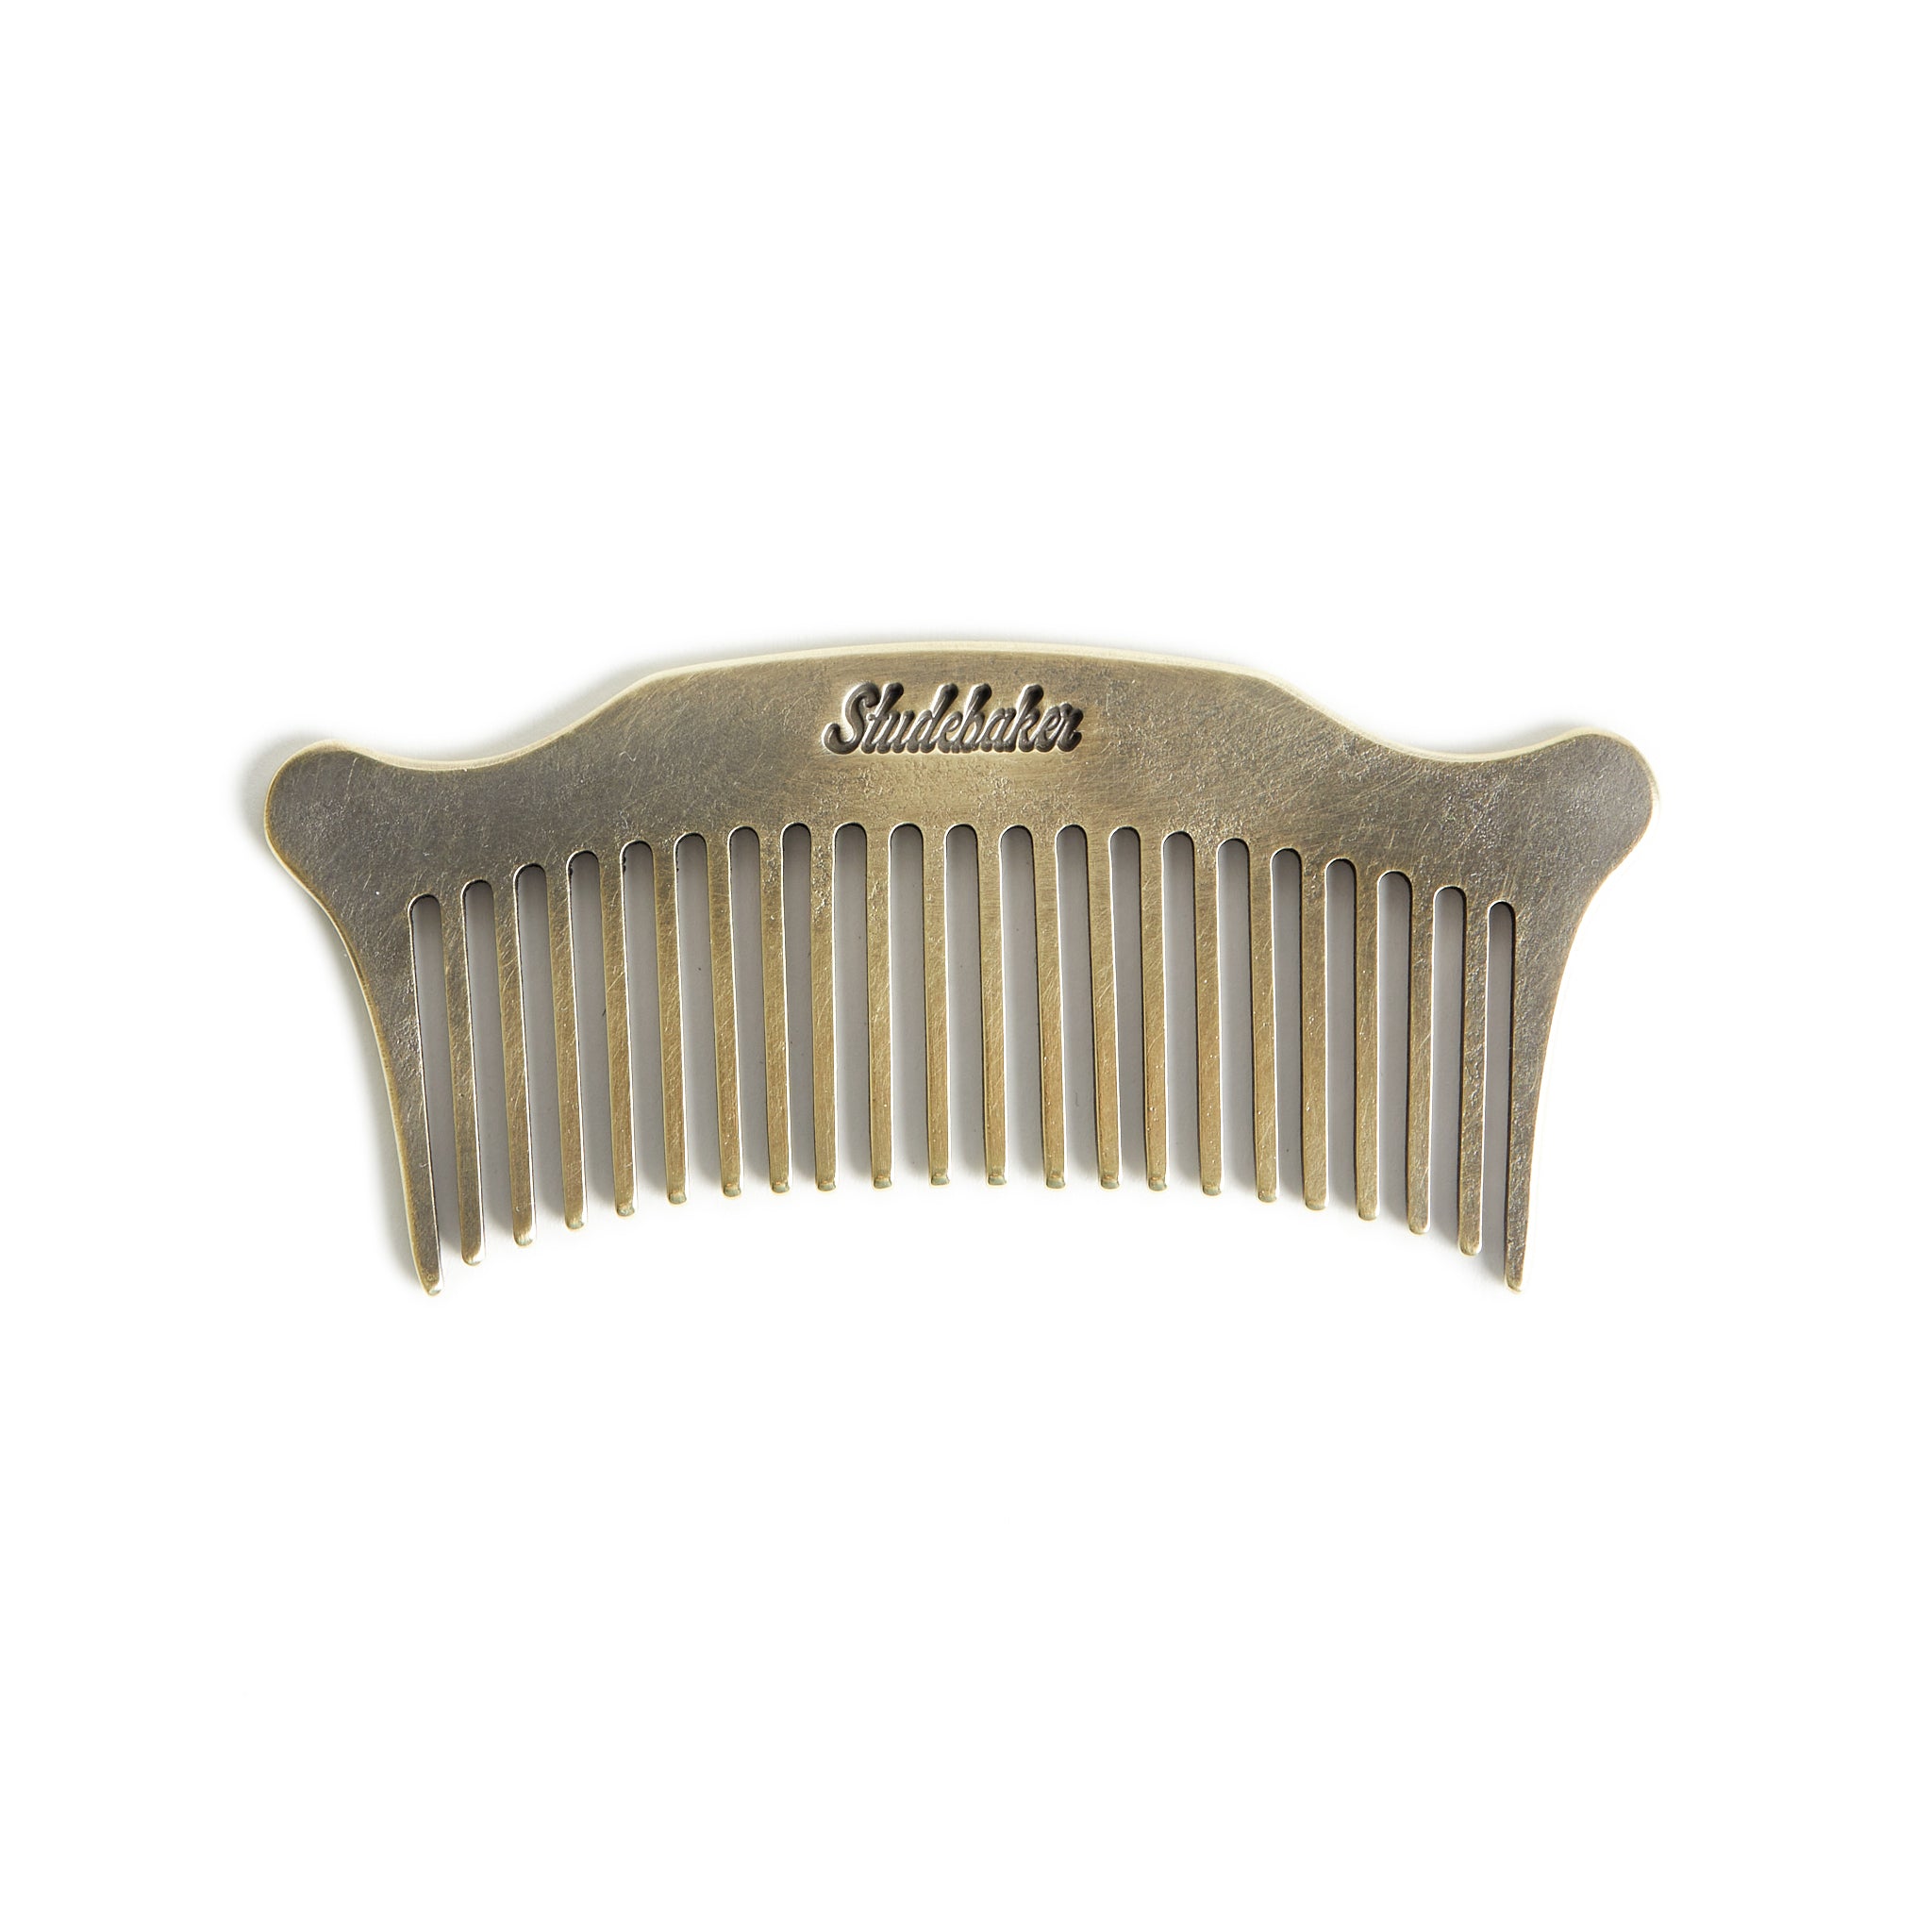 Studebaker Comb – Studebaker Metals